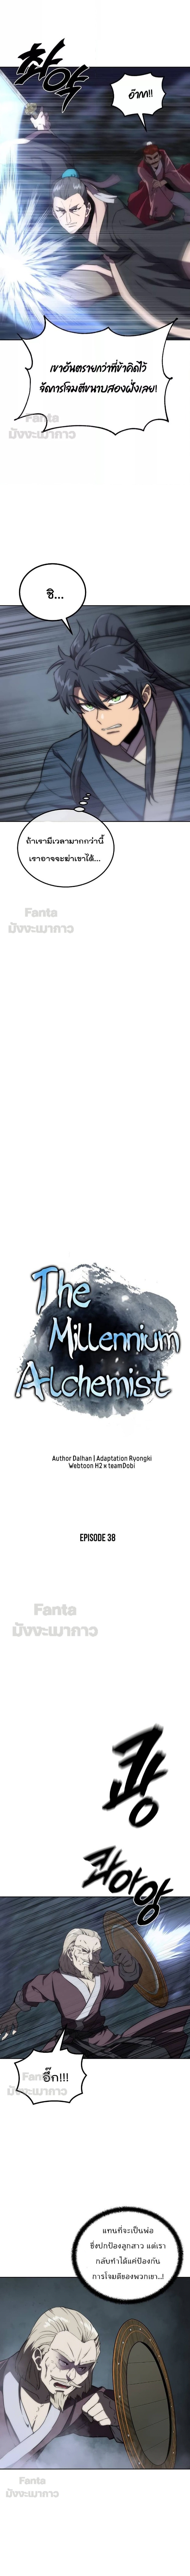 Millennium Spinning 38 (3)